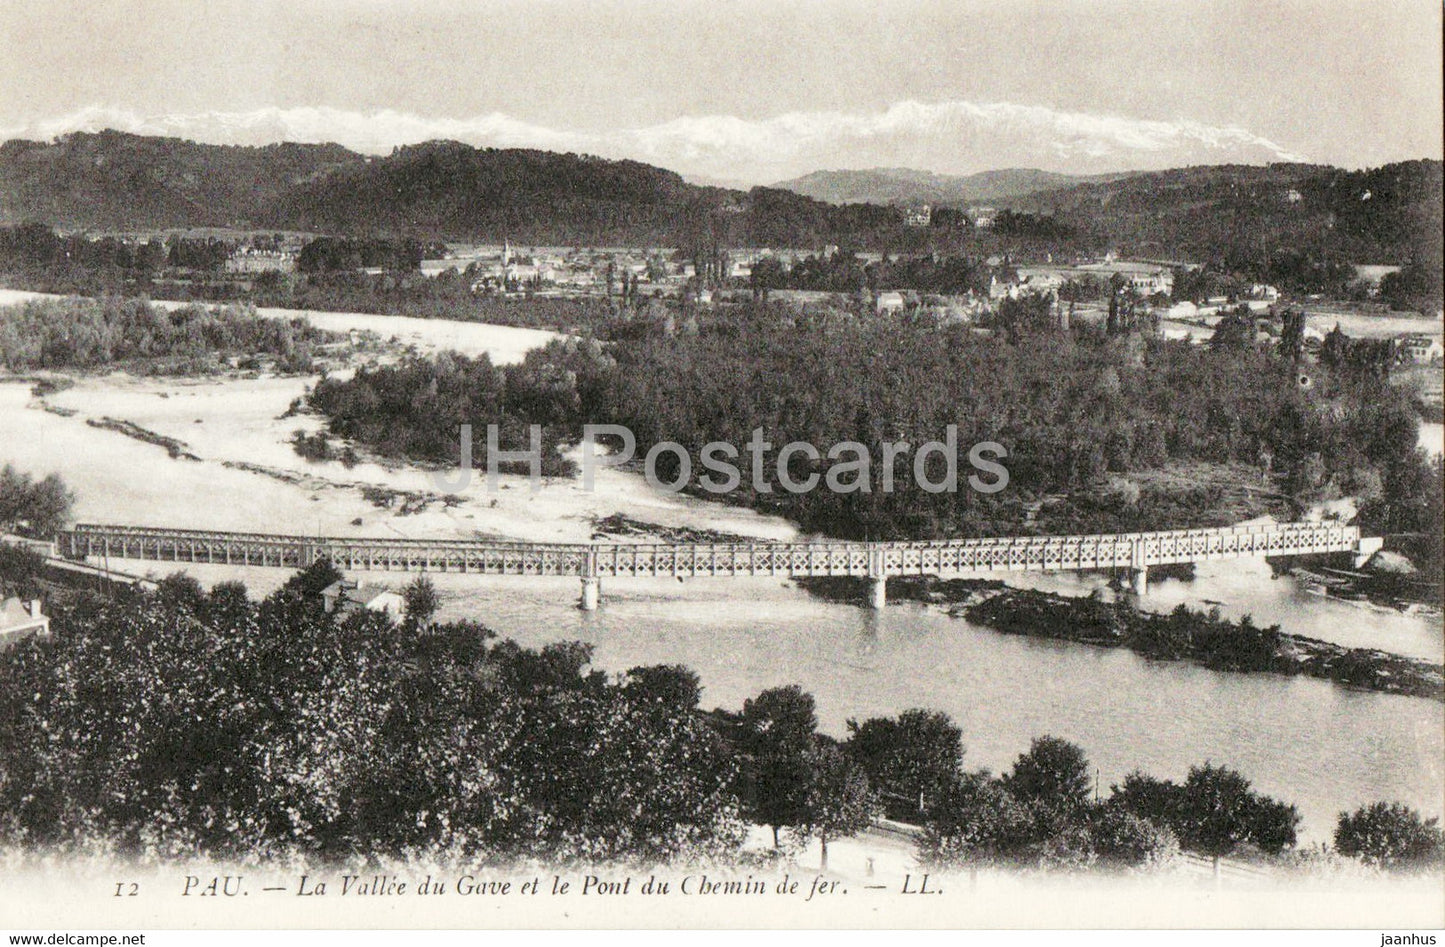 Pau - La Vallee du Gave et le Pont du Chemin de fer - bridge - 12 - old postcard - France - unused - JH Postcards